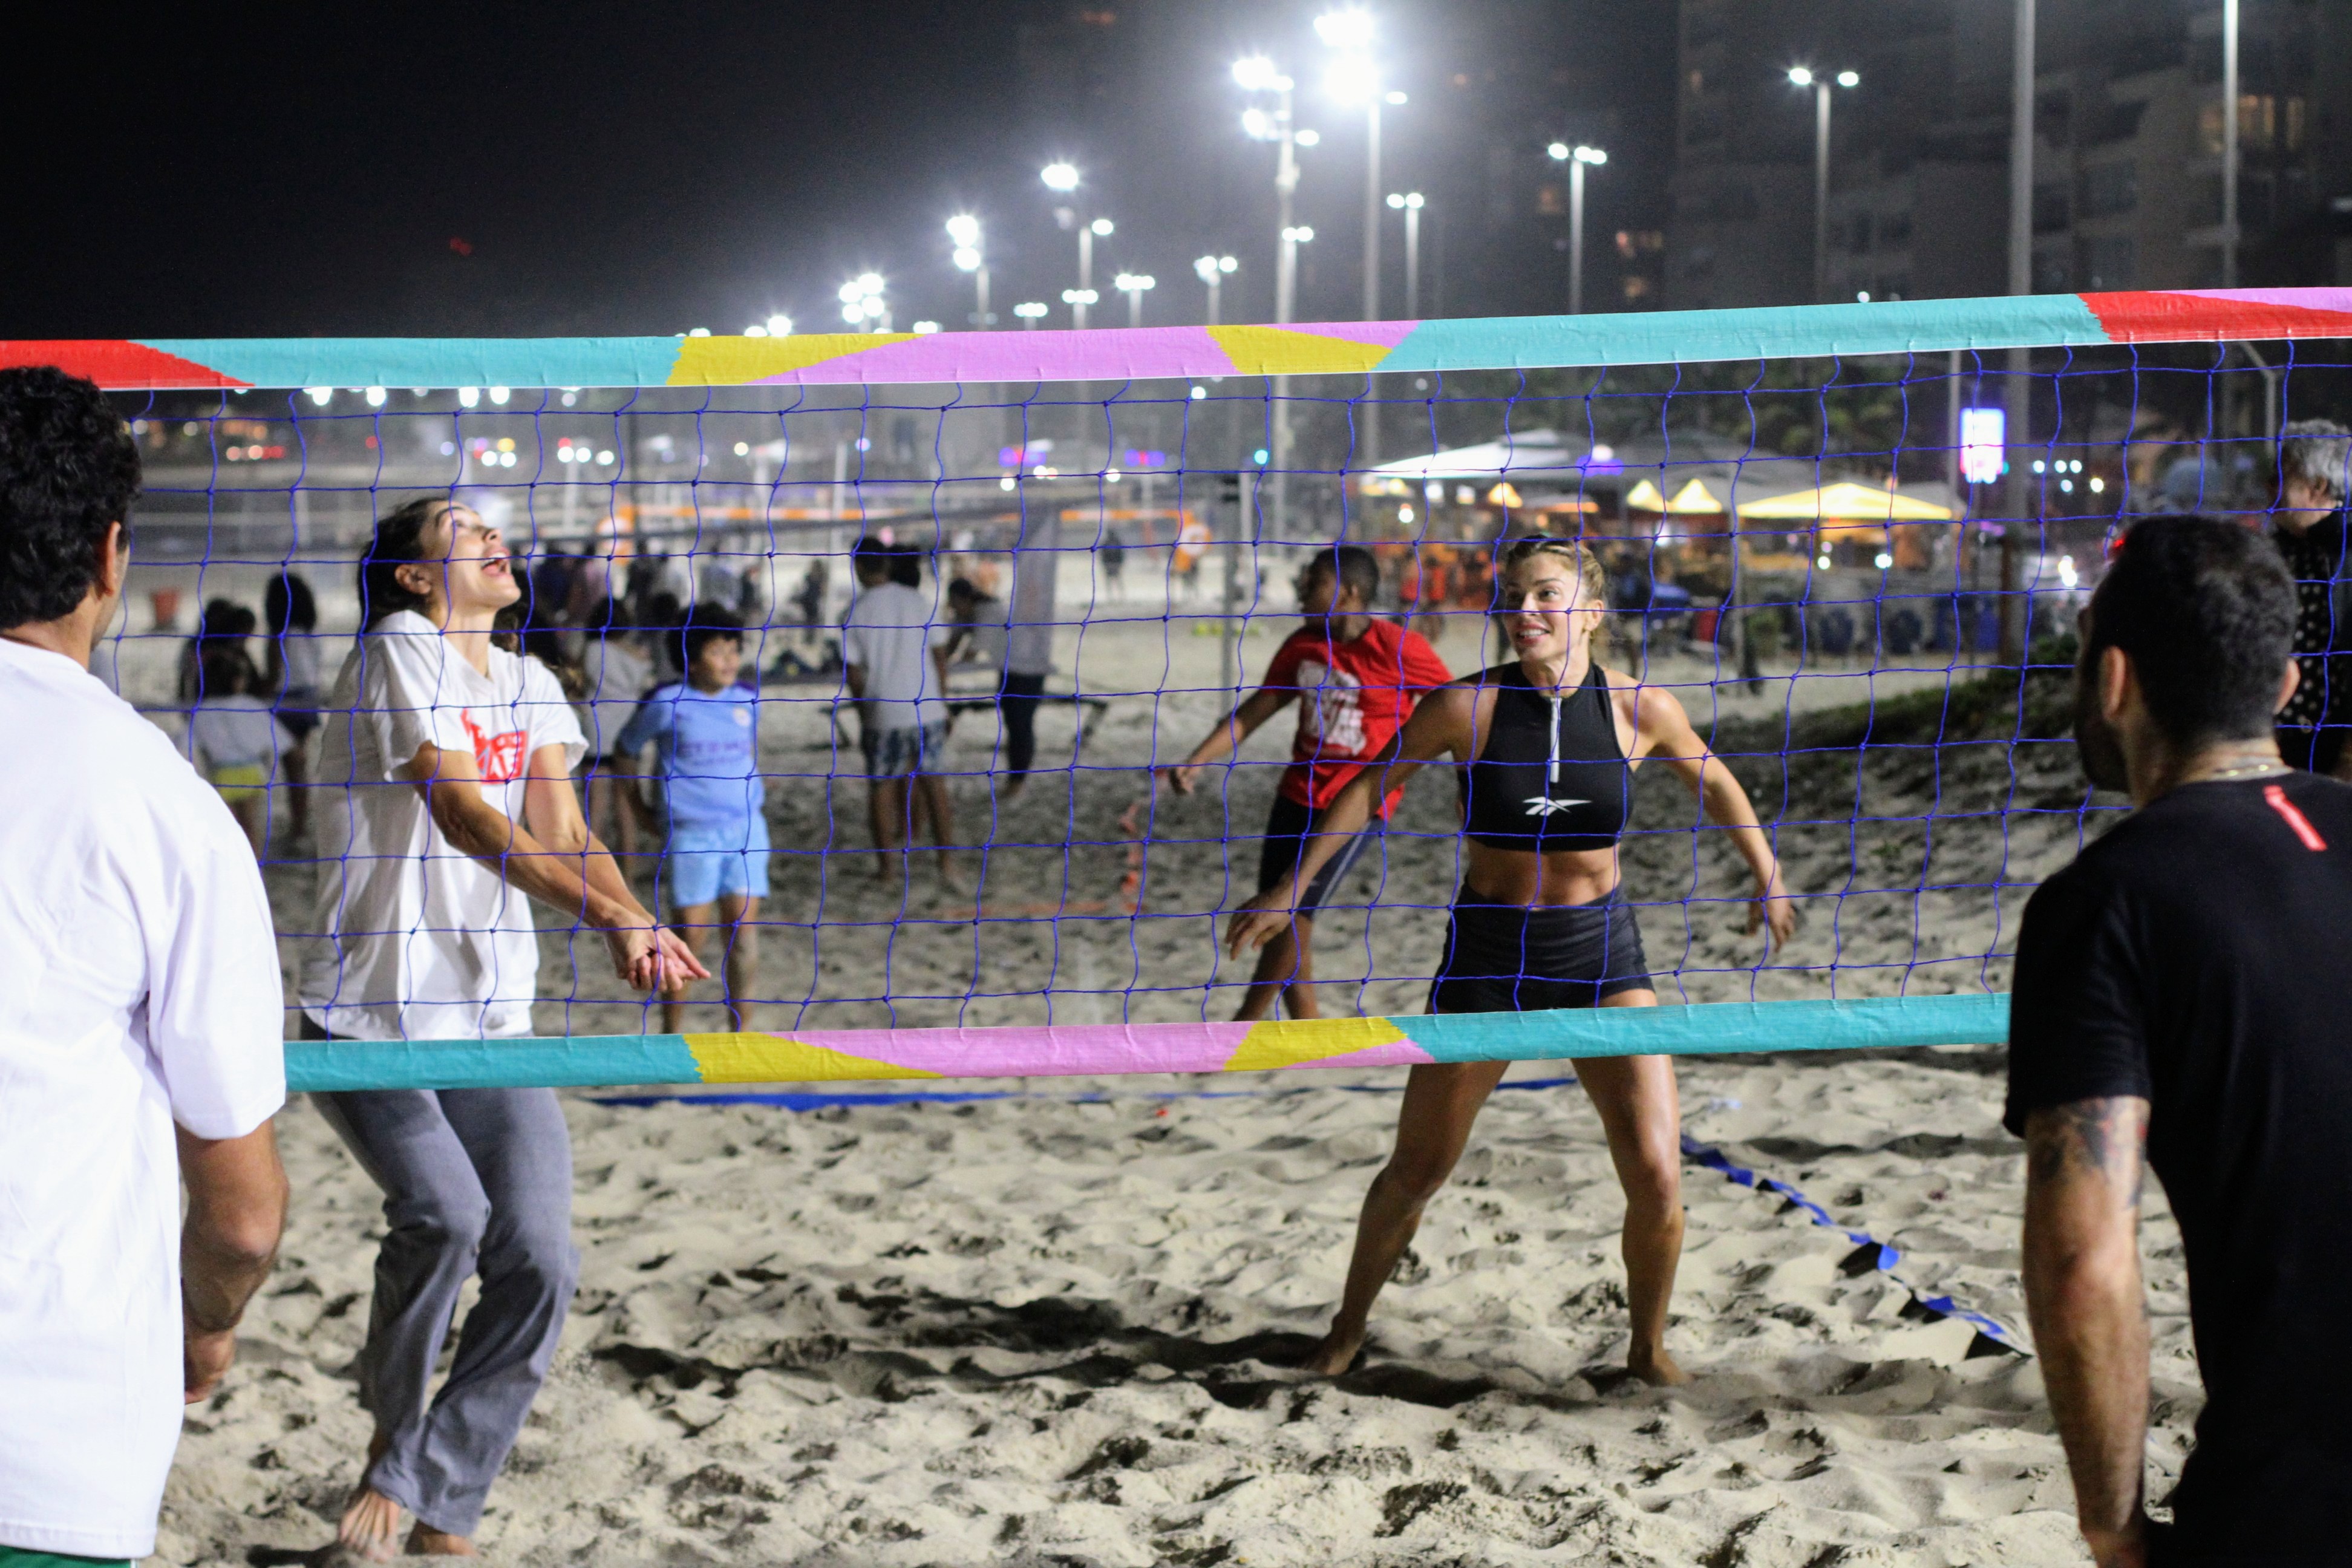 Grazi Massafera é clicada na praia em evento para apoiar causas e rouba a cena ao mostrar boa forma durante partida de vôlei